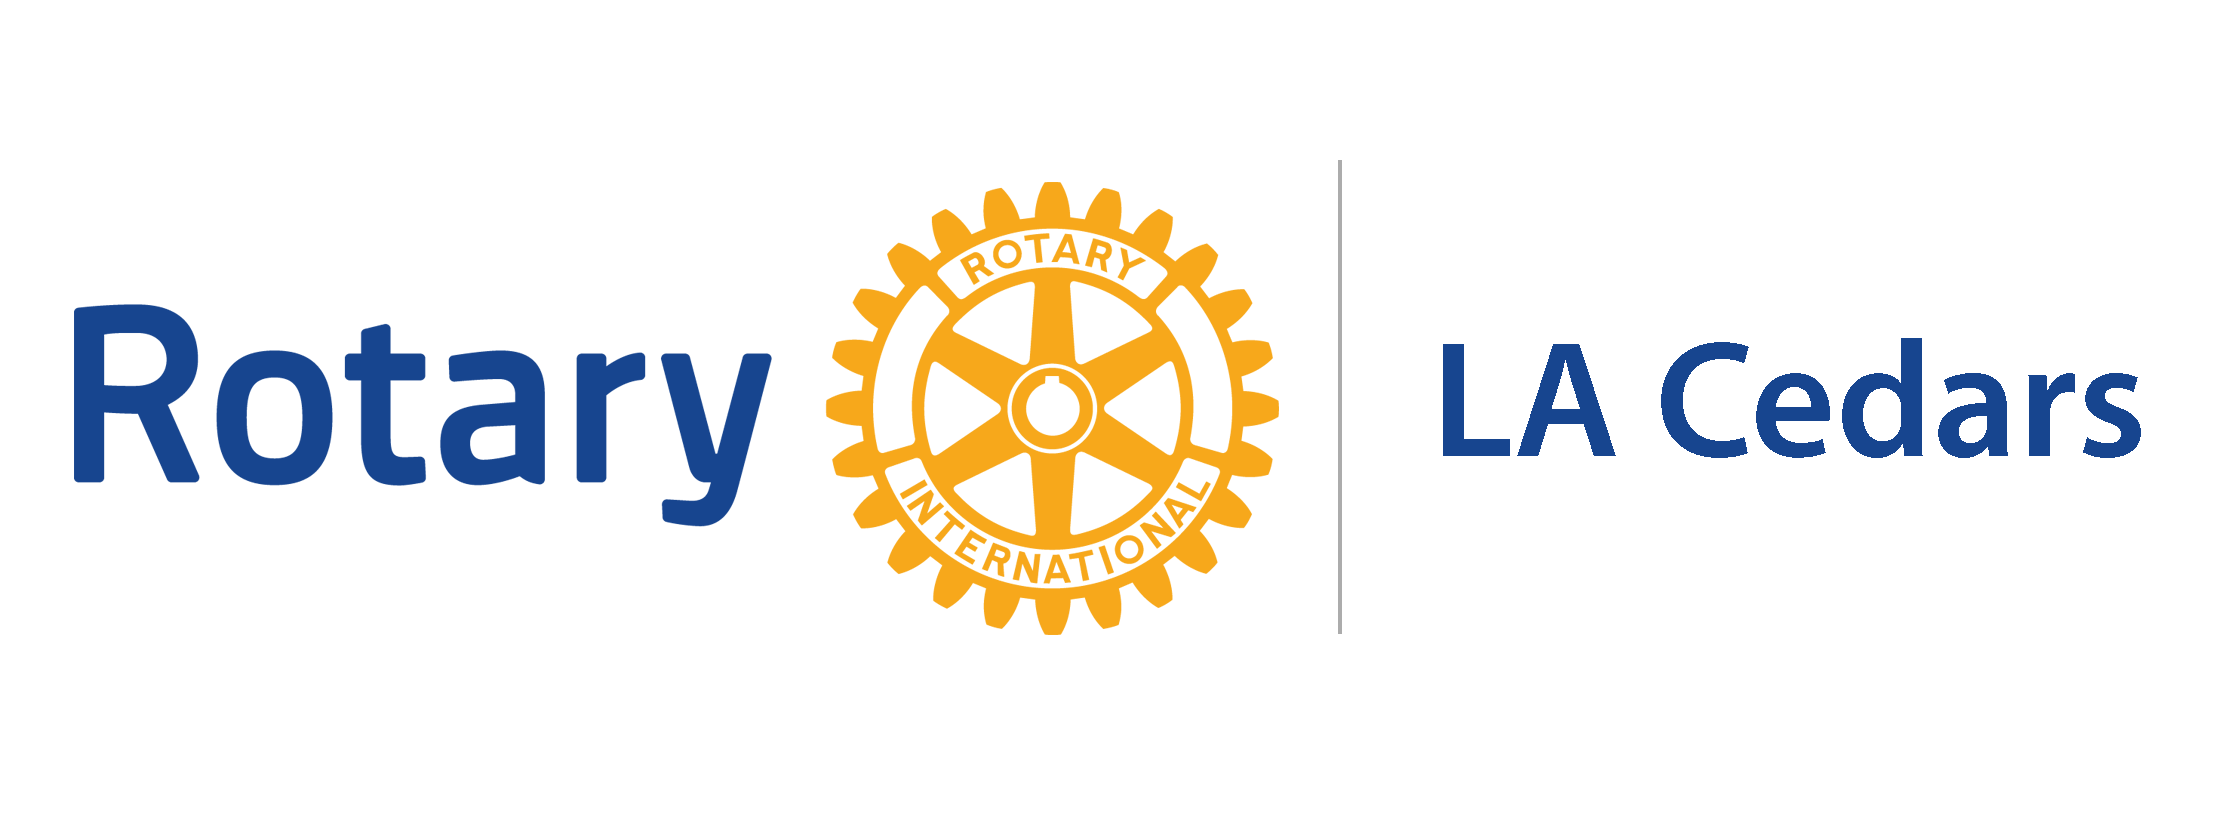 LA Cedars Rotary Club & Foundation